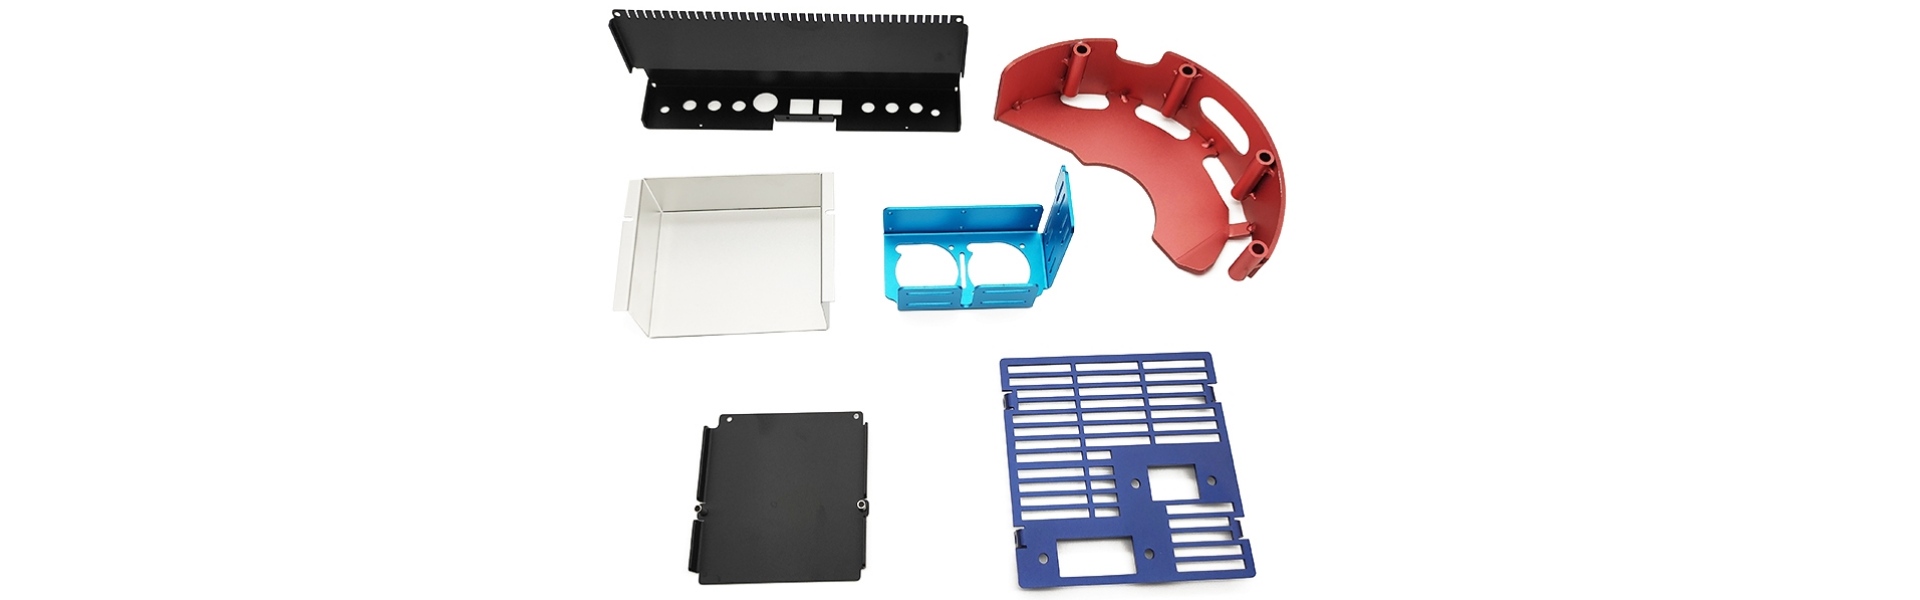 Wykonanie z blachy, części tłoczenia metalowe, usługa obróbki CNC,Xucheng Precision Sheet metal Products Co., LTD